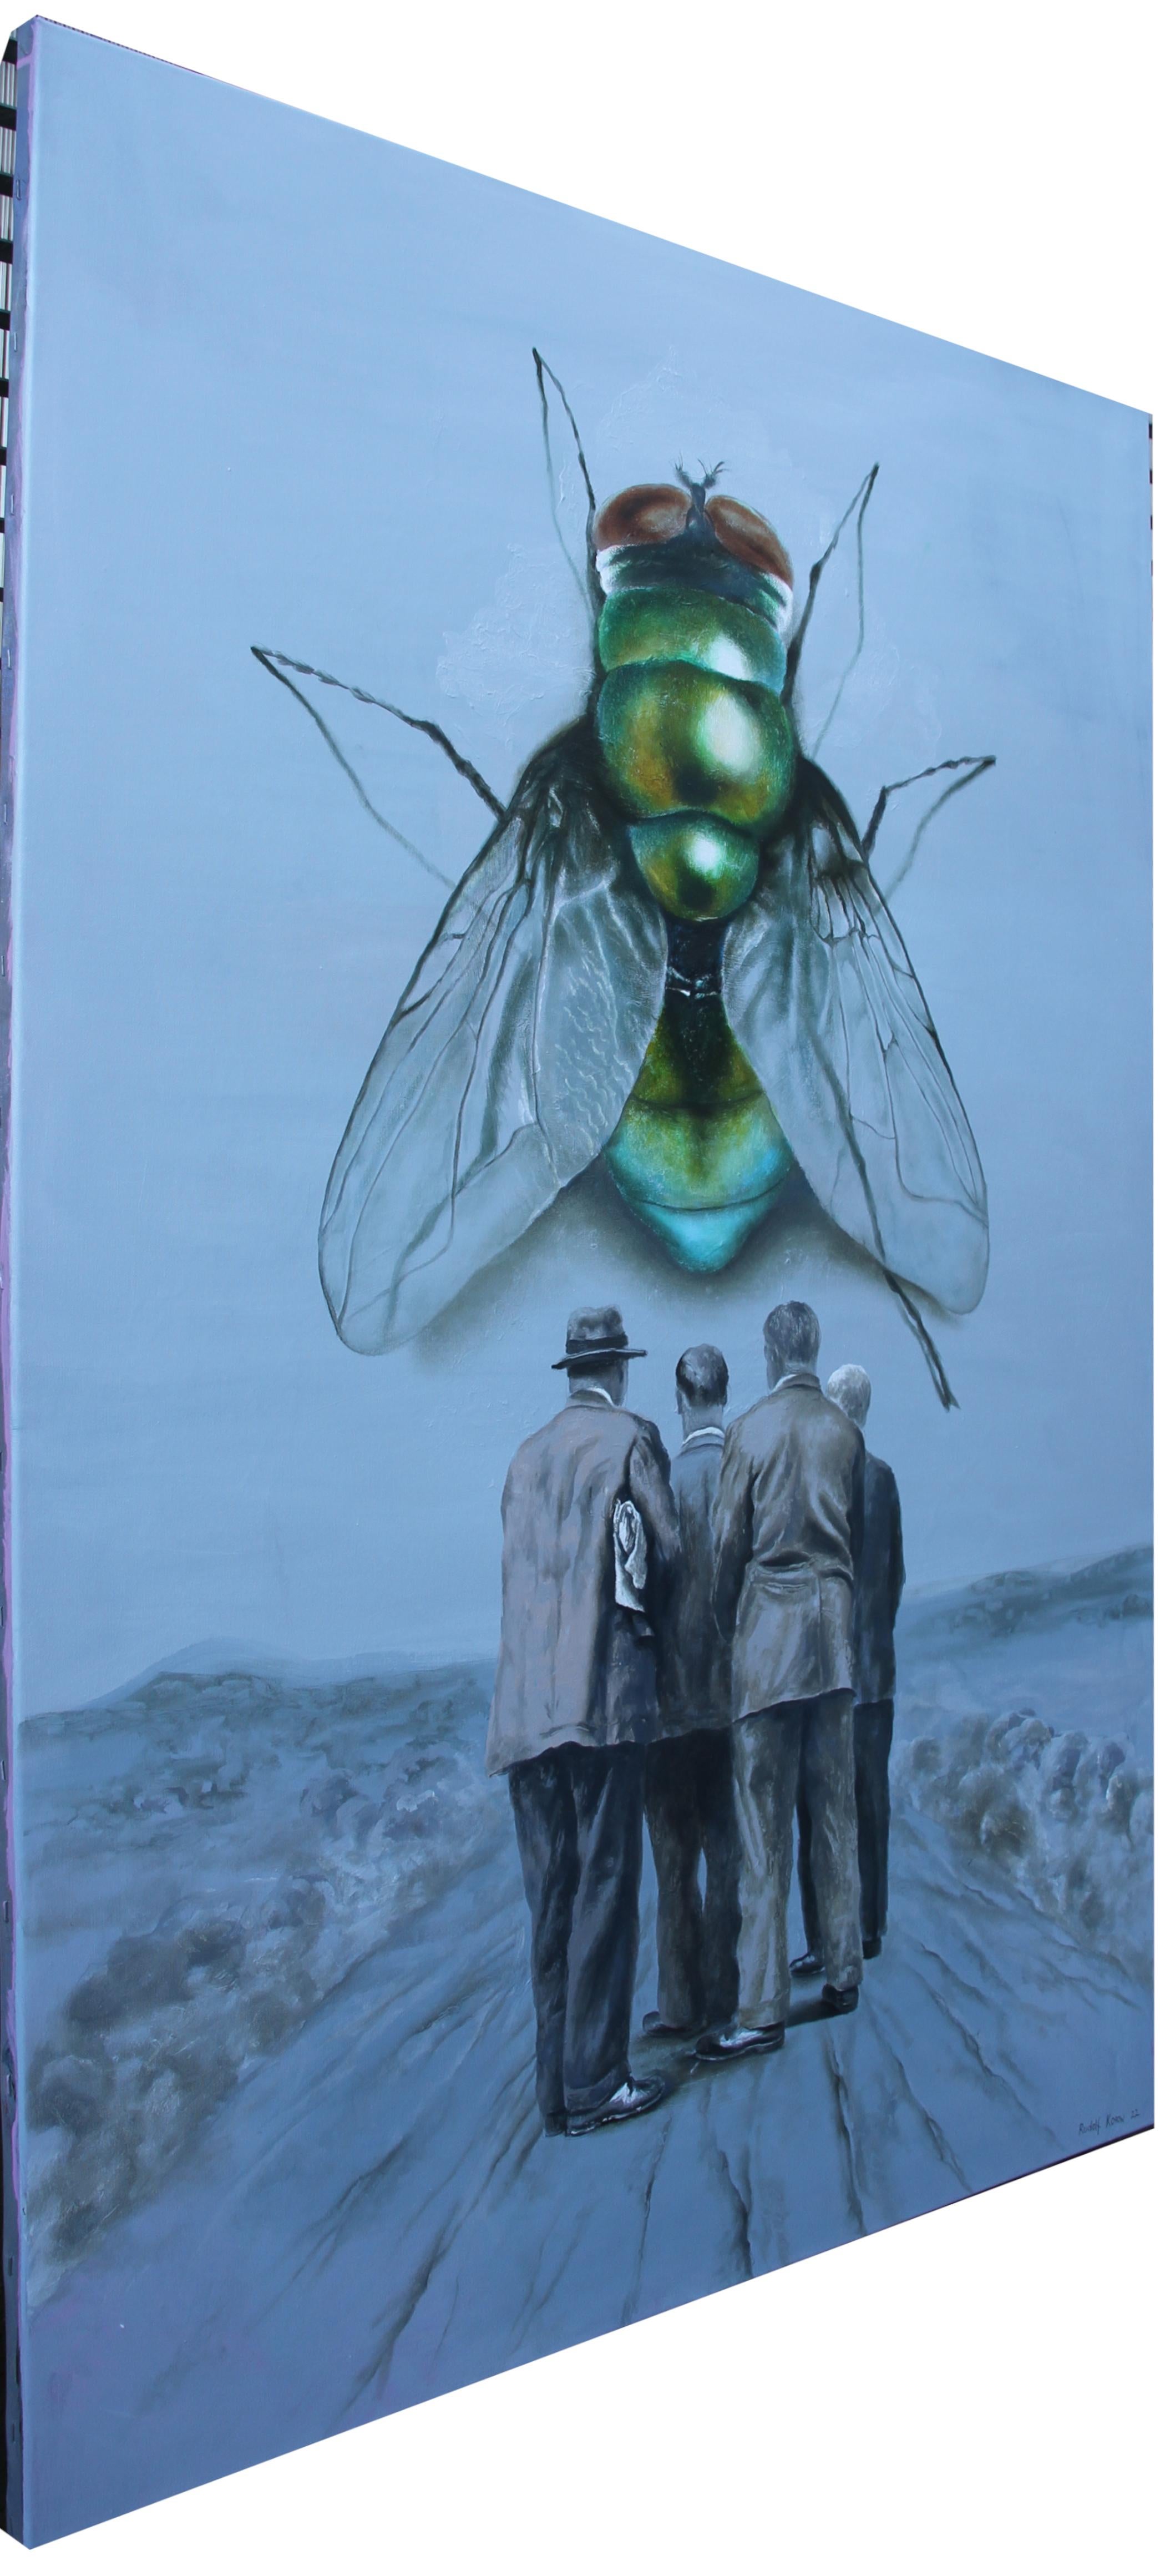 Superbe Originalmalerei auf Leinwand, die eine überdimensionale Fliege als Rätsel in einem klaren blauen Himmel über einer ratlosen Gruppe von Männern darstellt.

Stichworte; Amerikana, Surrealismus, Fliege, Vintage, Ölgemälde, Männer figurative